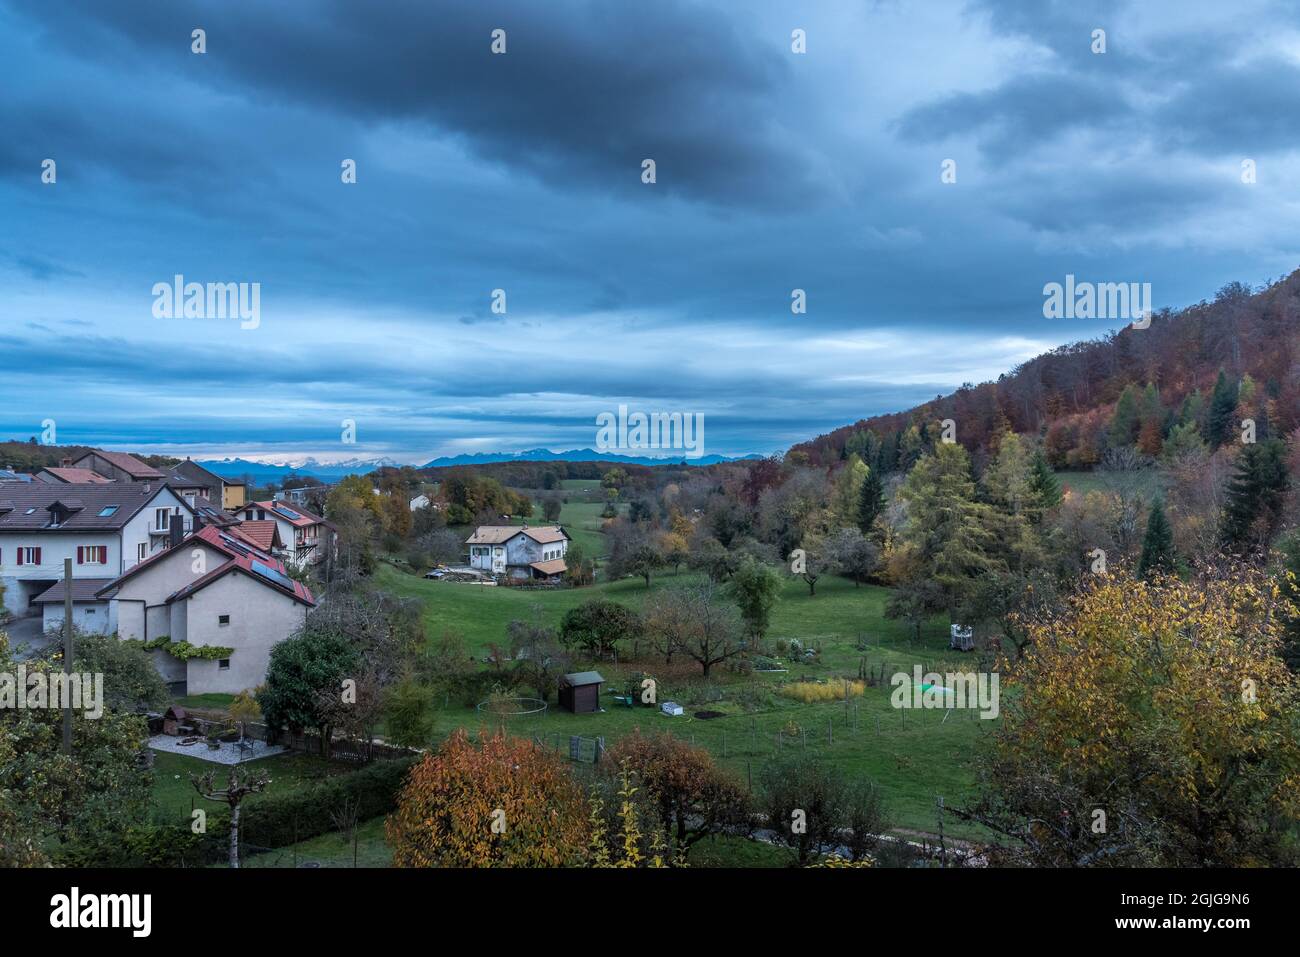 Vue sur une campagne suisse typique avec ciel nuageux. Photo de haute qualité Banque D'Images